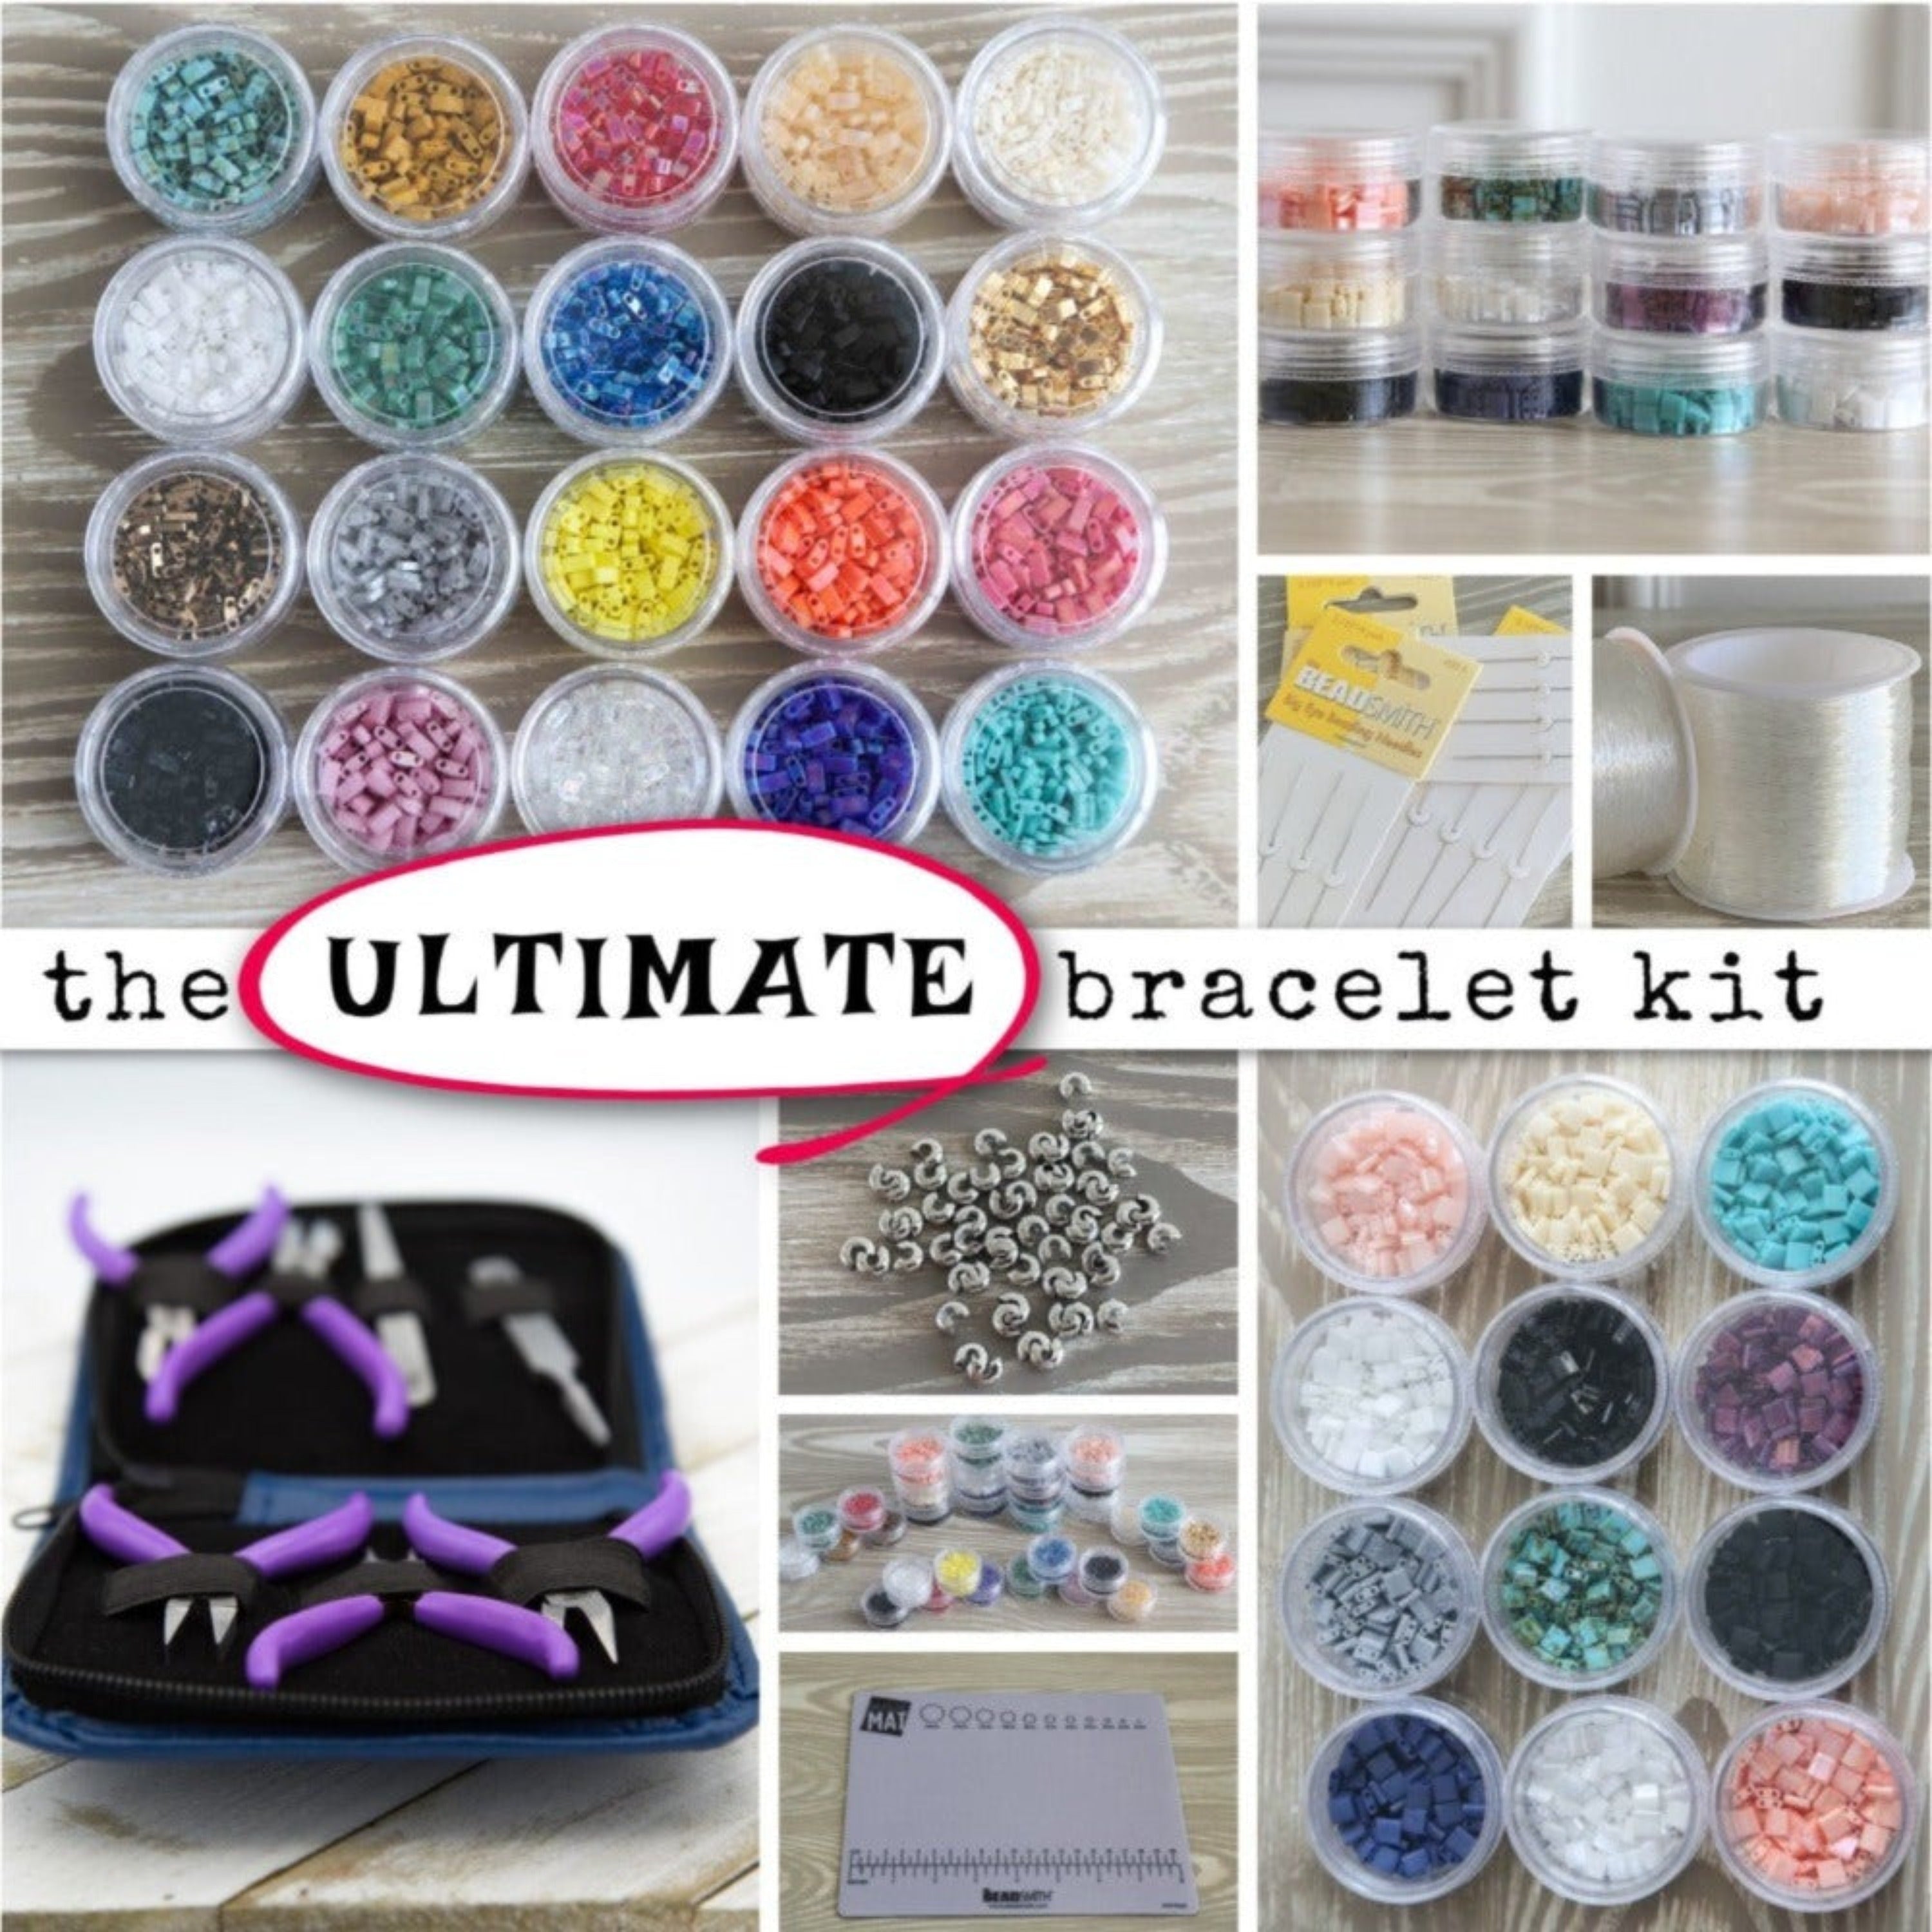 Assorted Mix Bracelet Kit - Makes Up To 3 Bracelets!